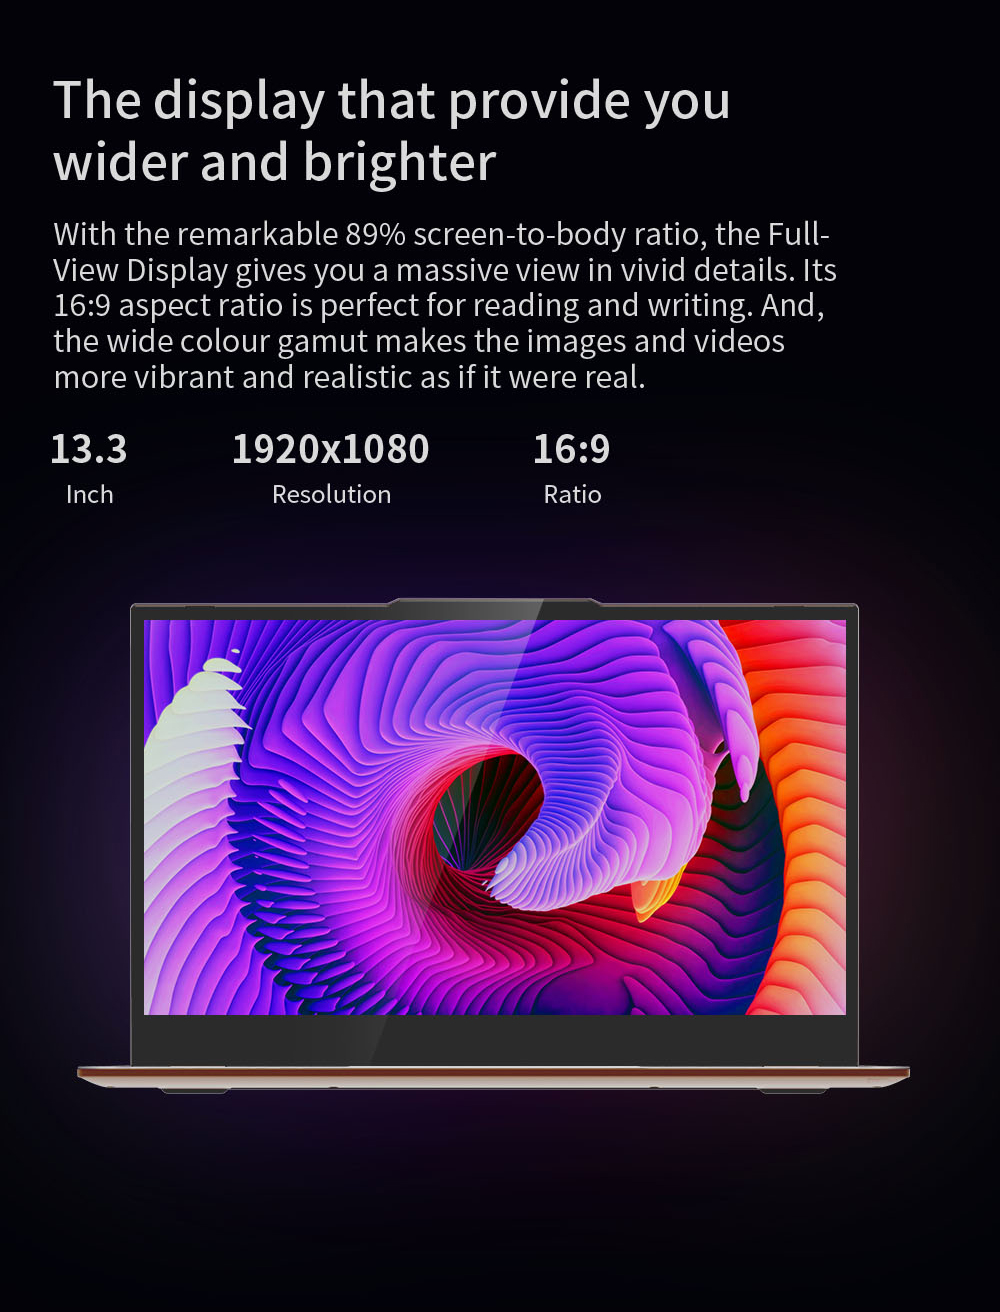 คำอธิบายเพิ่มเติมเกี่ยวกับ J EZbook X3 Air 8GB128GB โน๊ตบุ๊ค Notebook Quad Core Win 10 Laptop 13.3 Inch 1920*1080 IPS Screen